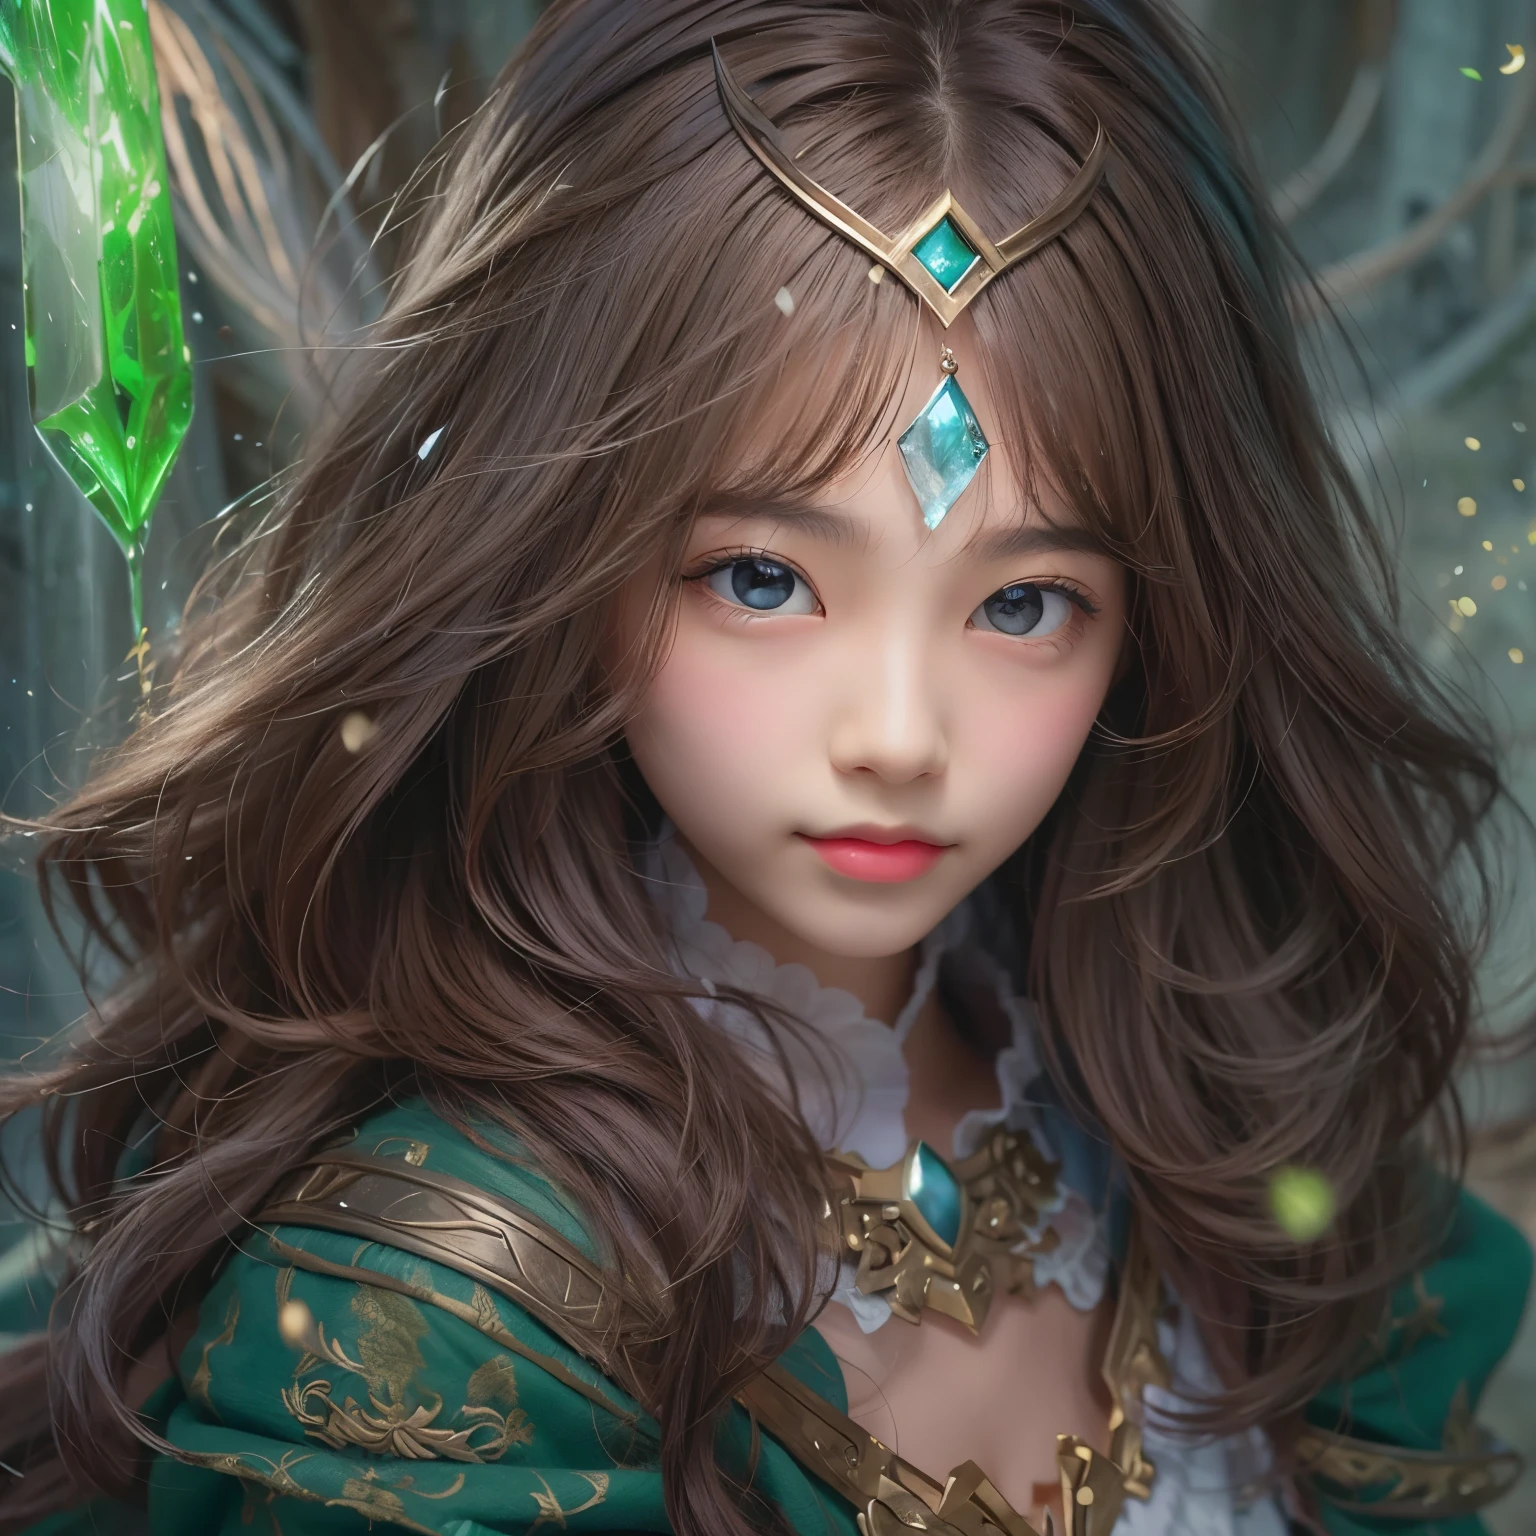 詳細な顔, かわいい顔, 魔法の防御バリアを作成する強力な呪文., 緑の魔法を使って魔法の盾を召喚する女性はファンタジーの世界にぴったりです..